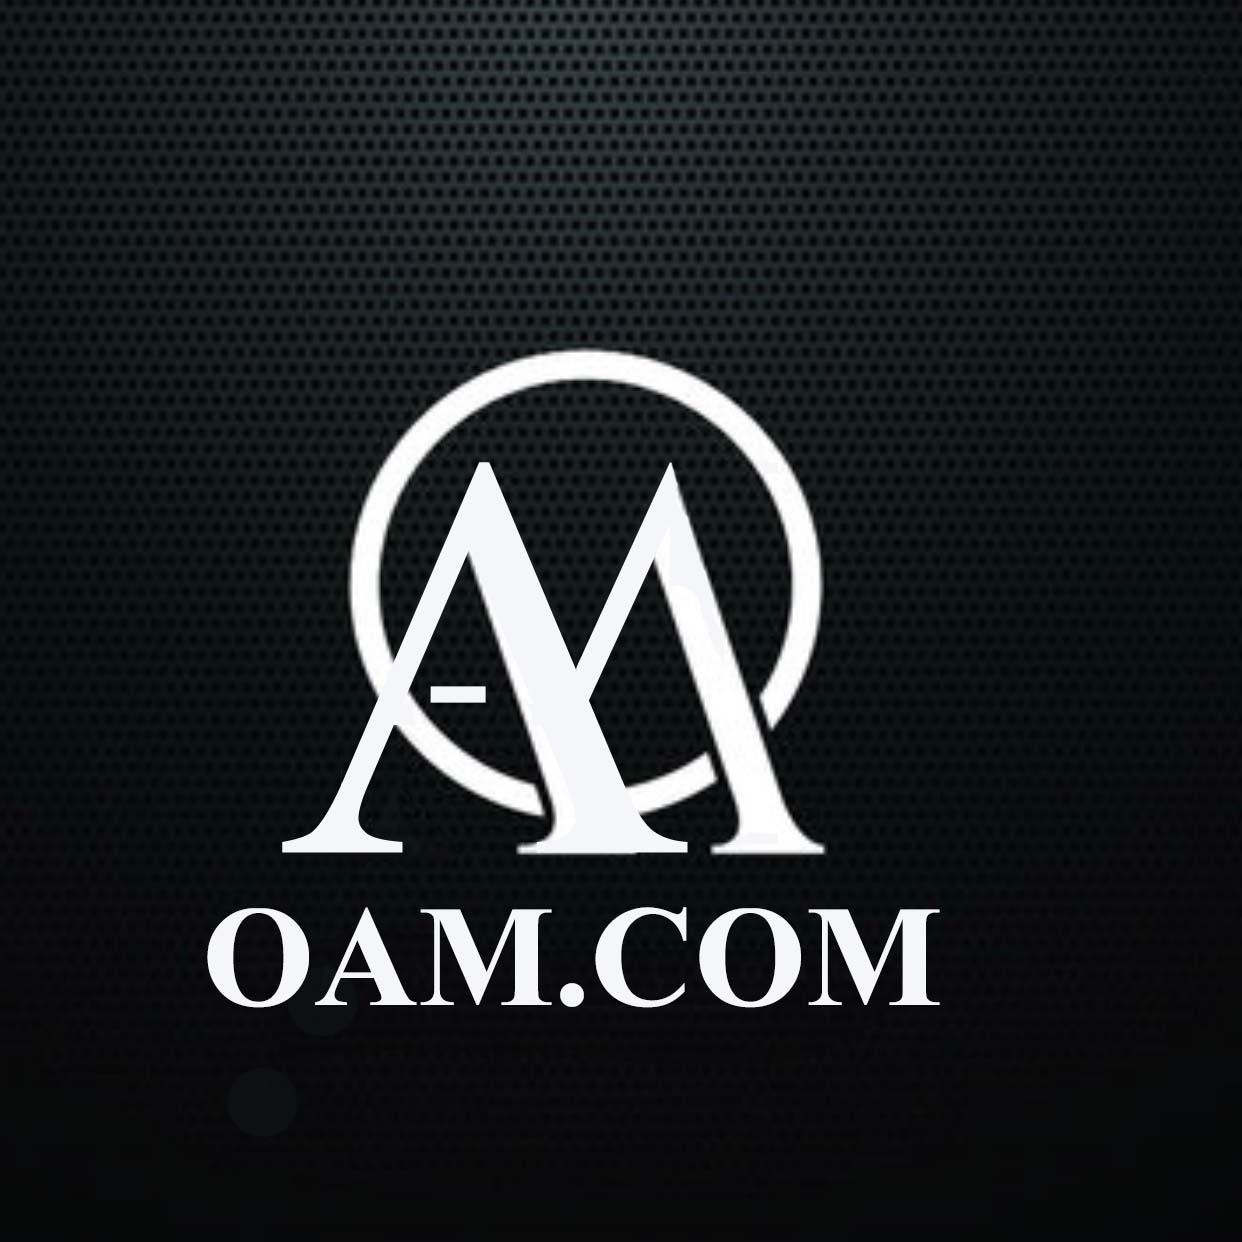 OAM.com